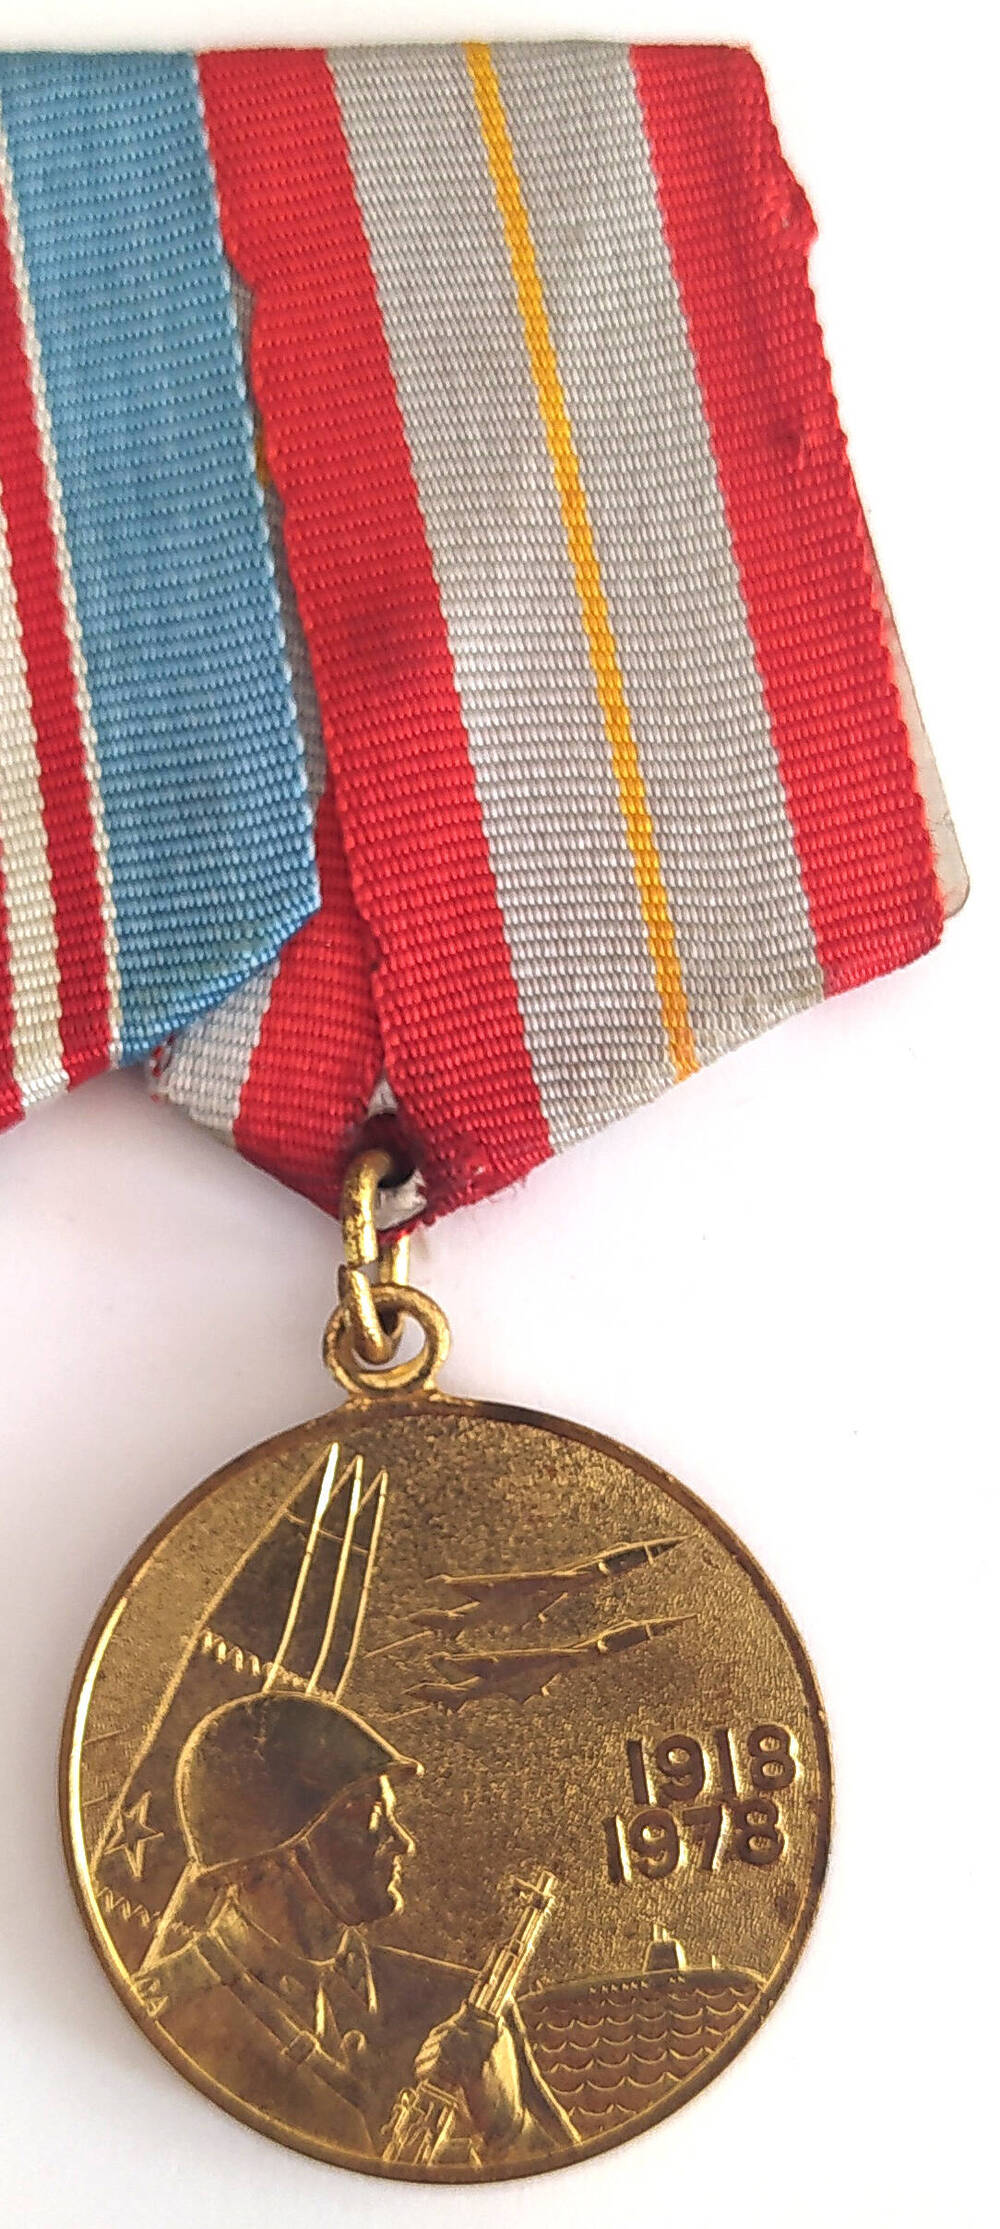 Медаль «60 лет Вооруженных Сил СССР» Суржика Б.И.